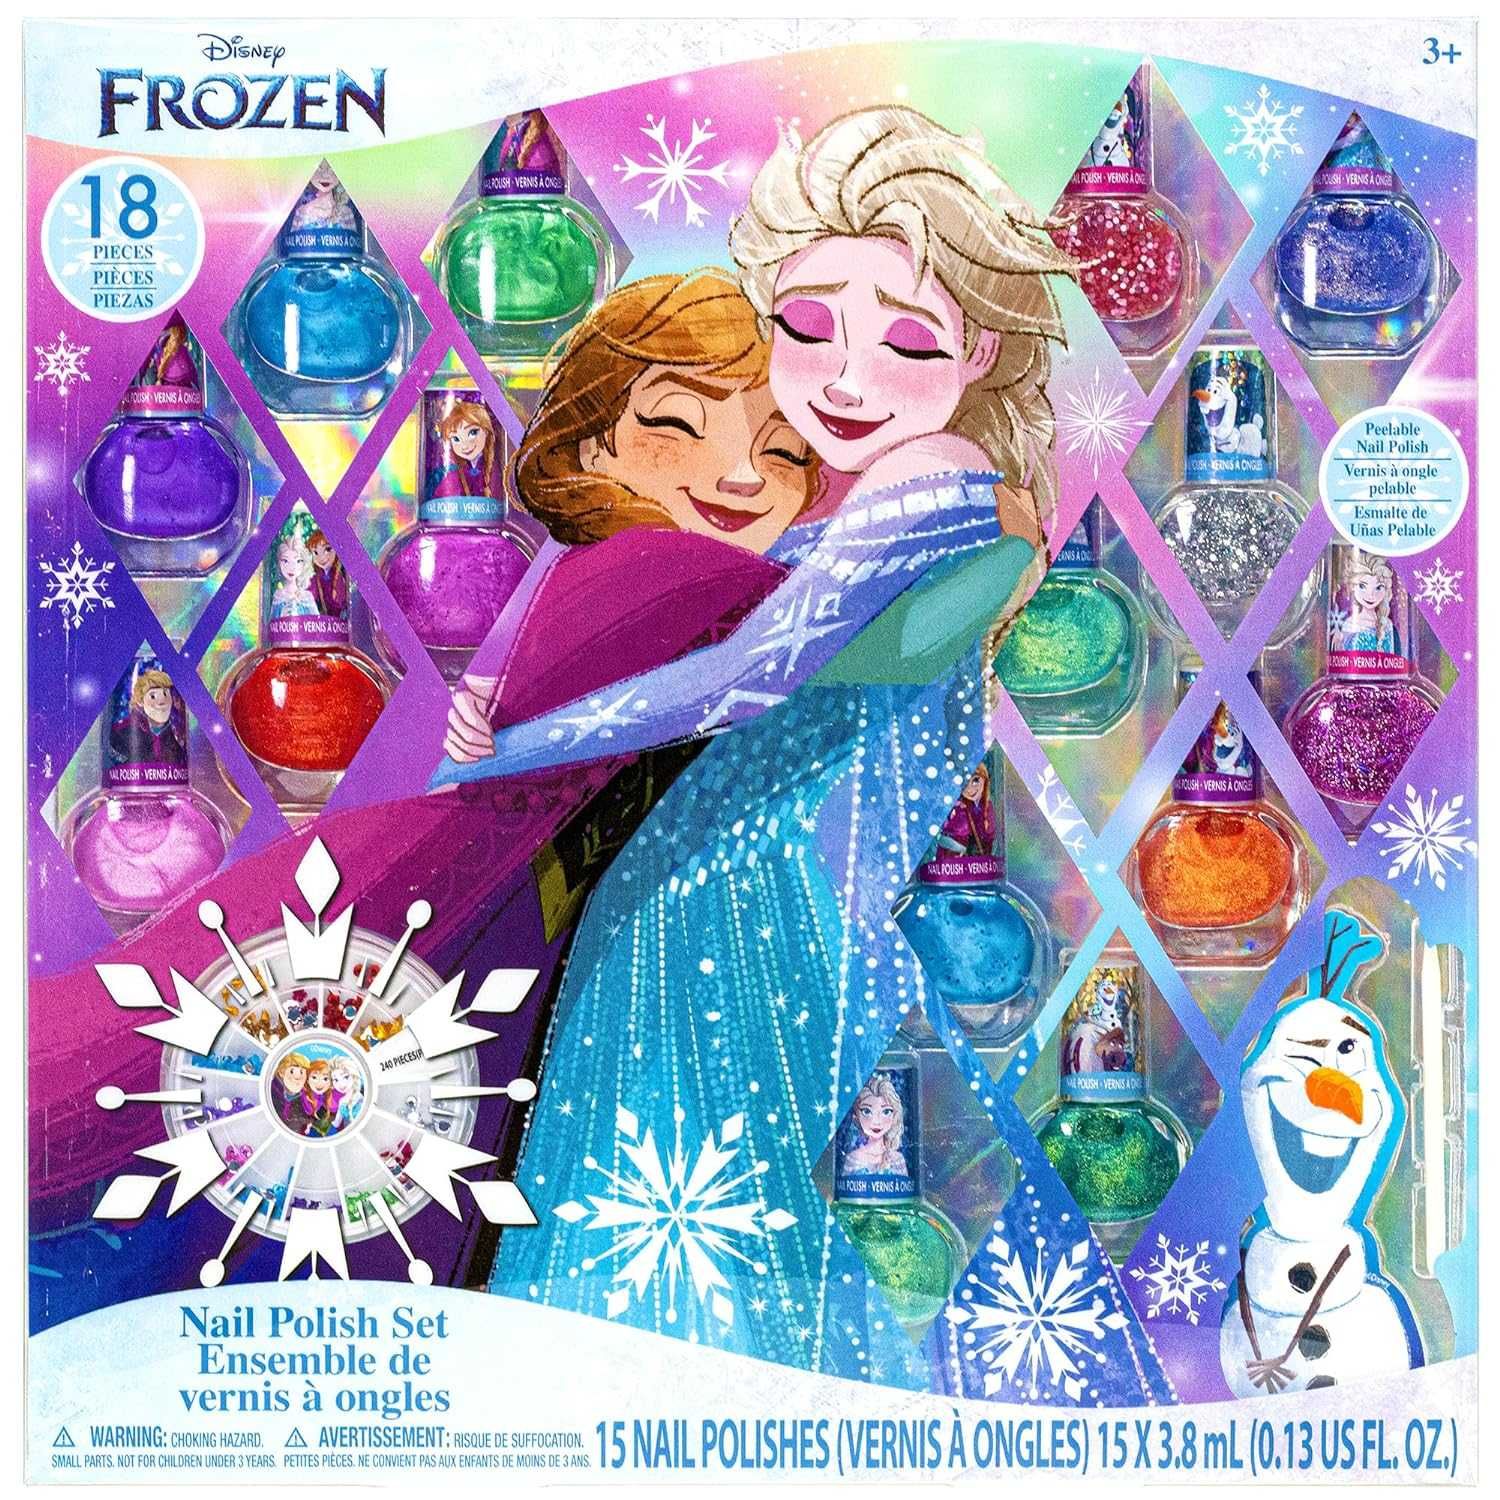 лаки для ногтей для девочки Холодное сердце с 3 лет Disney Frozen